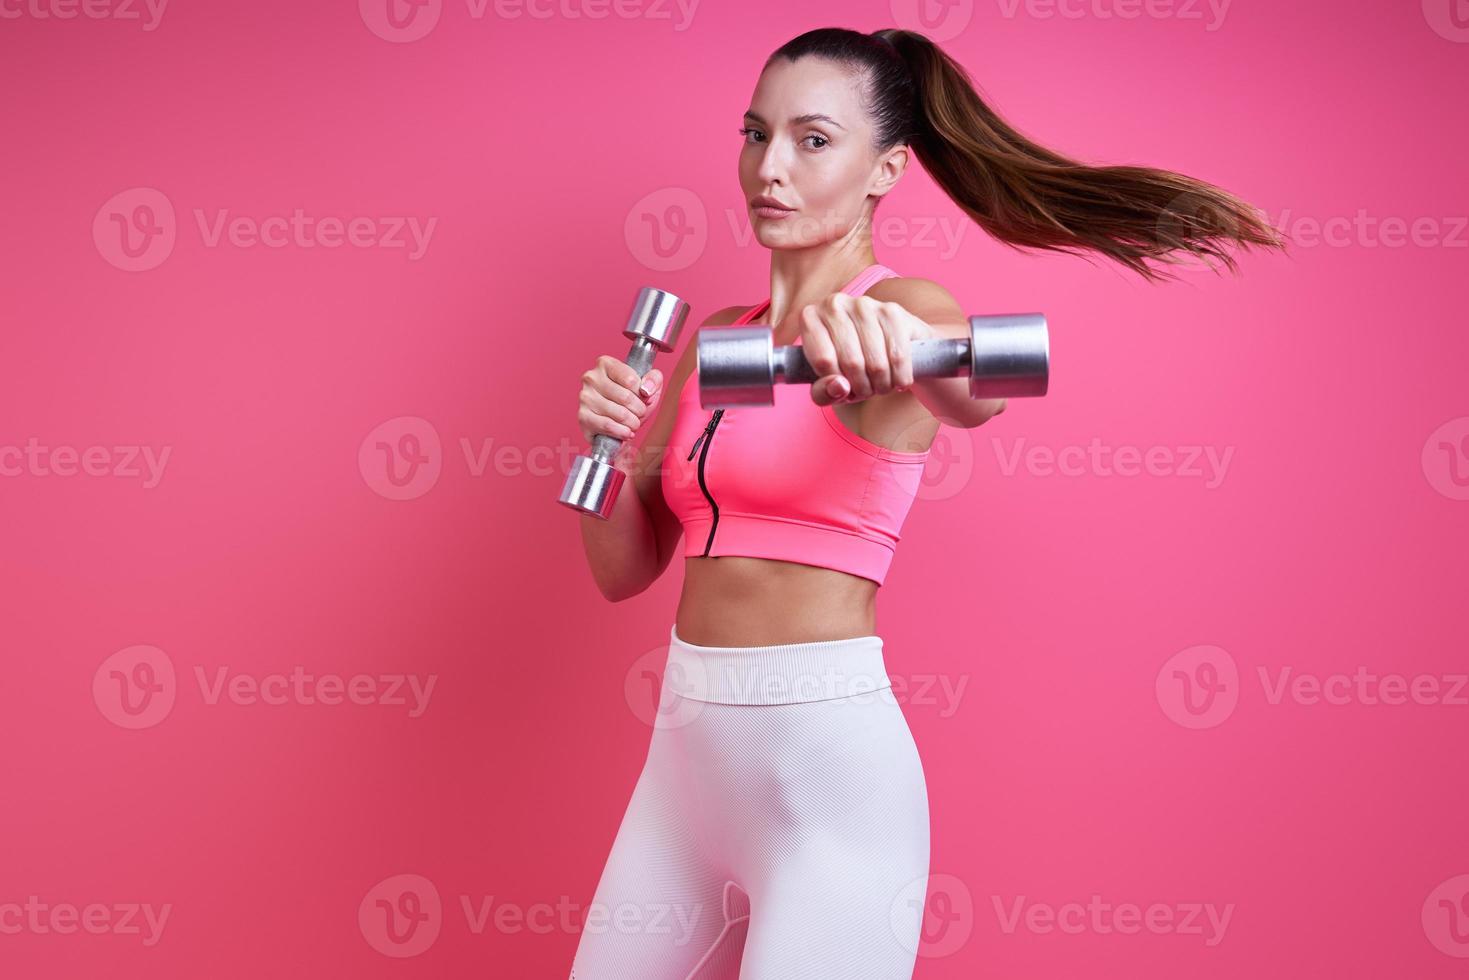 zelfverzekerde jonge vrouw in sportkleding die traint met halters tegen roze achtergrond foto